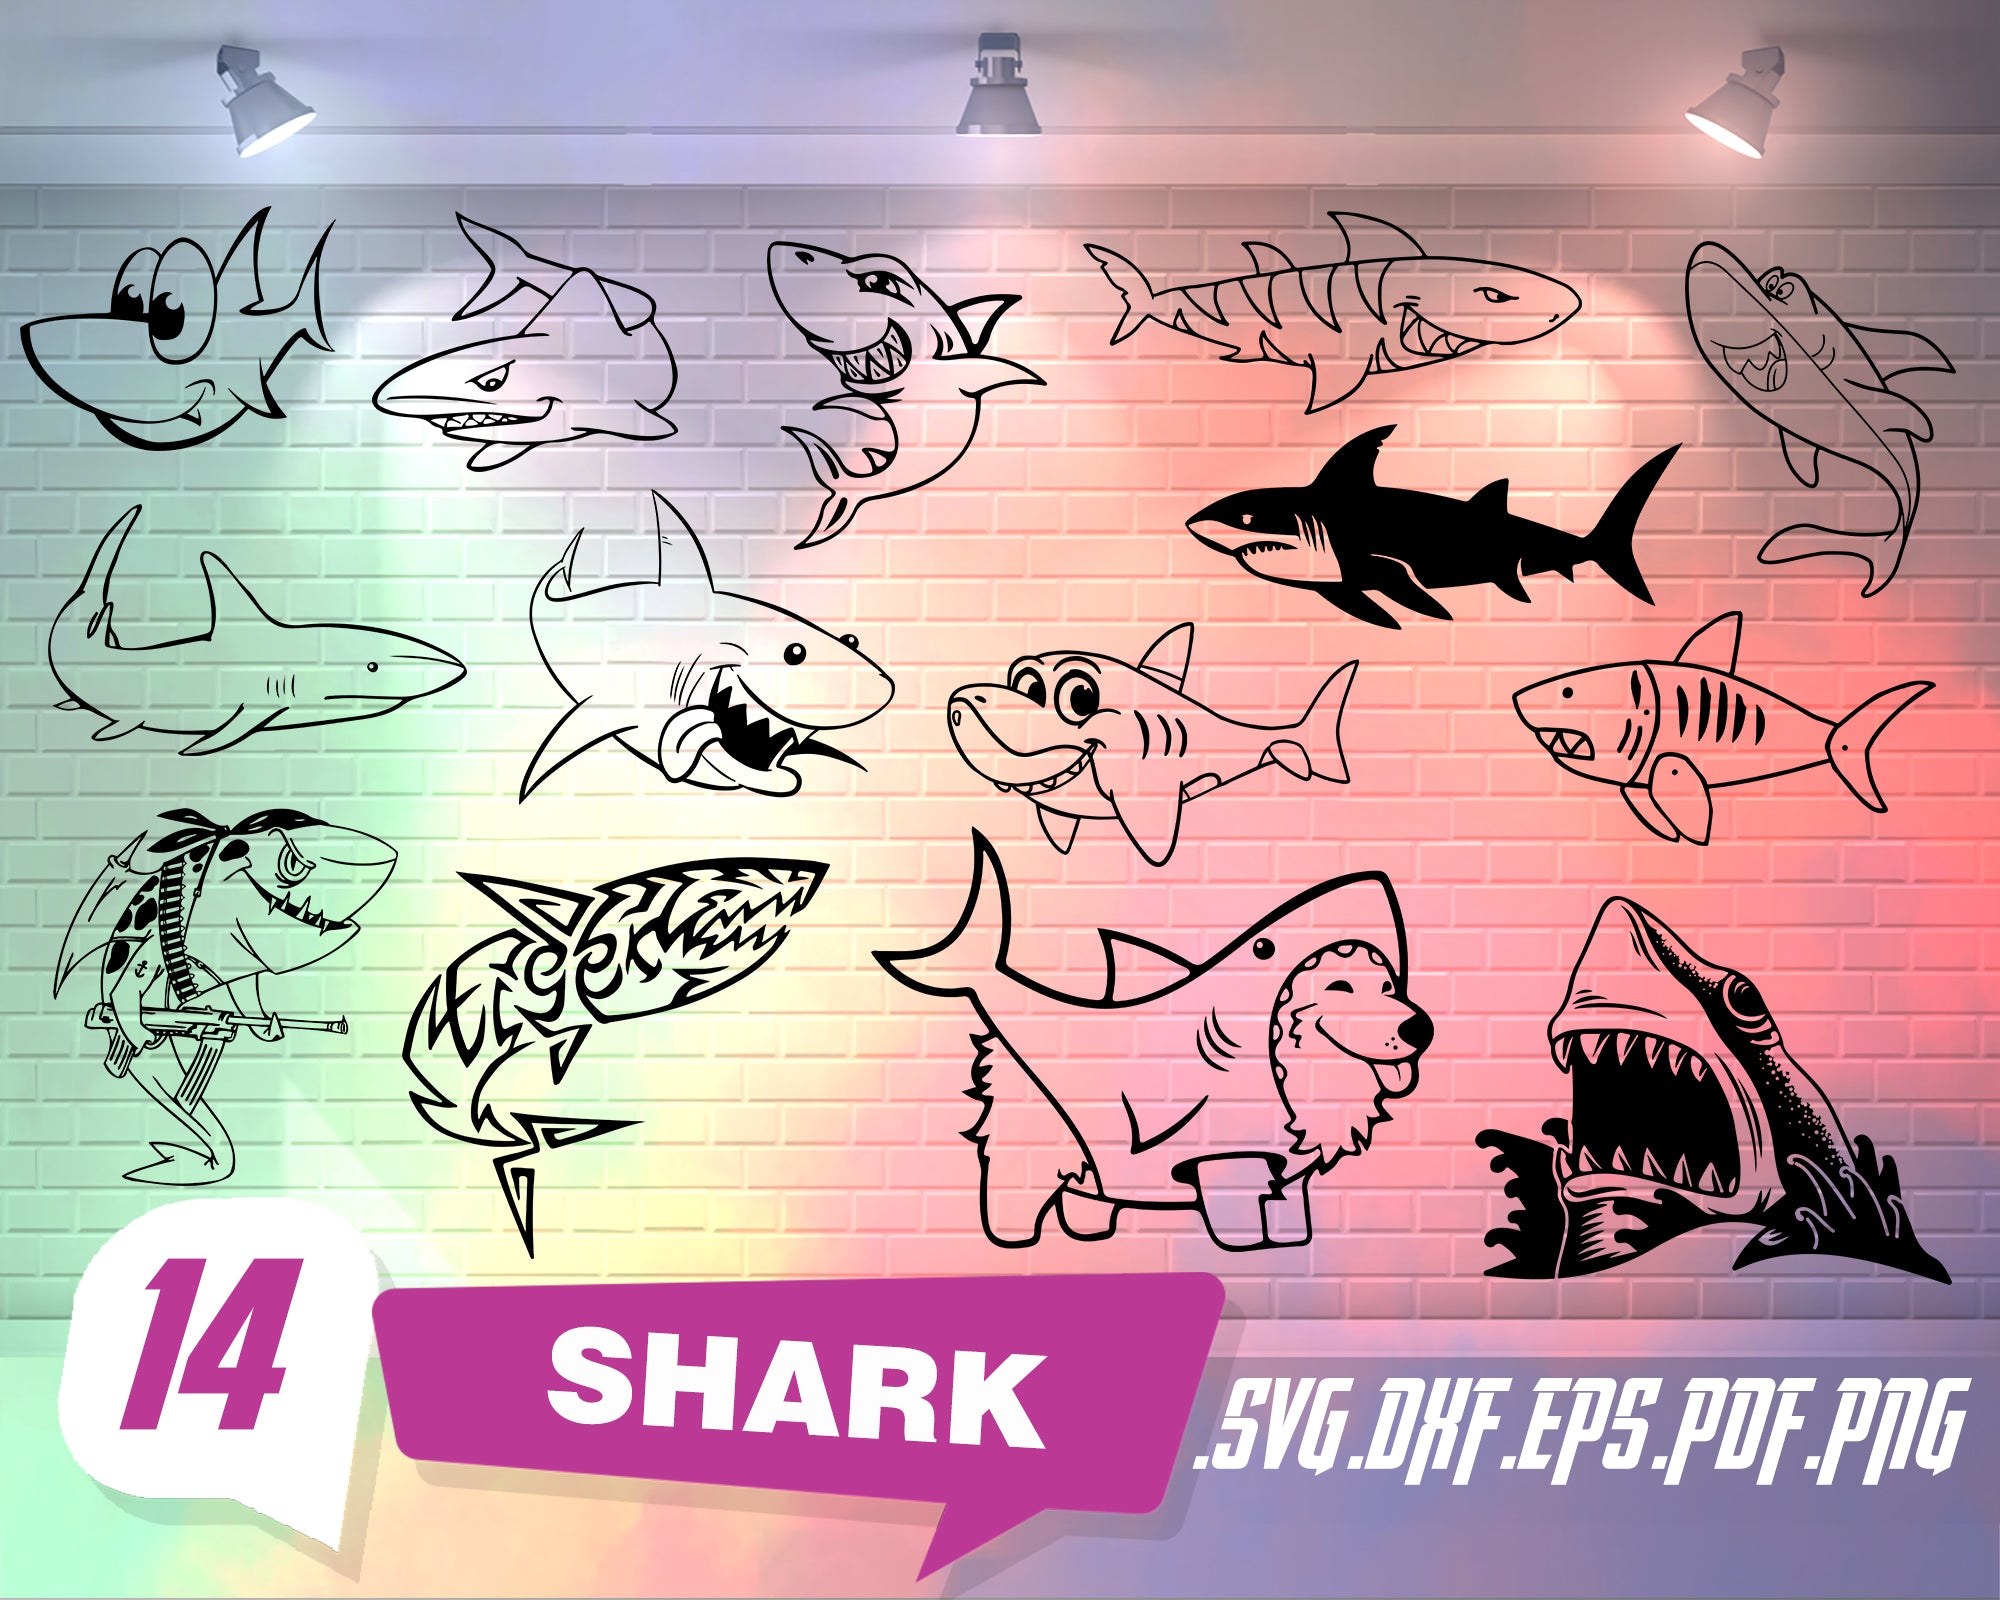 Free Free 176 Shark Week Svg SVG PNG EPS DXF File